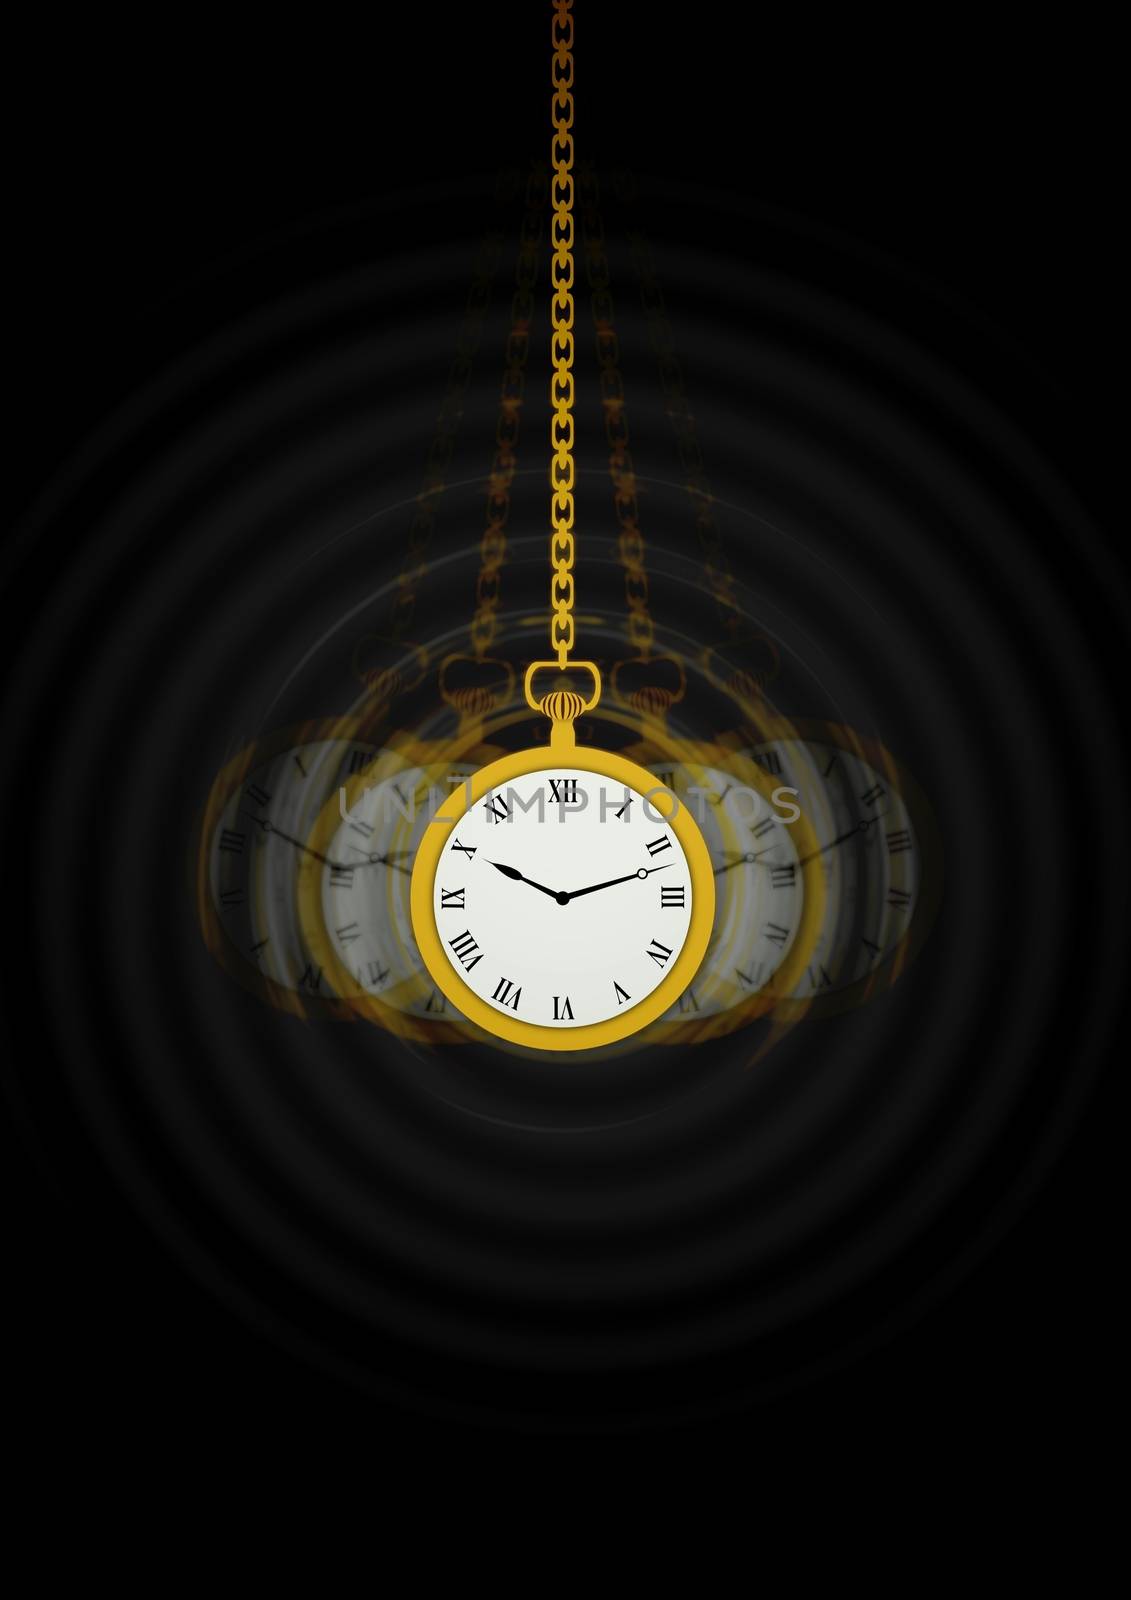 Hypnotists Pocket Watch by darrenwhittingham